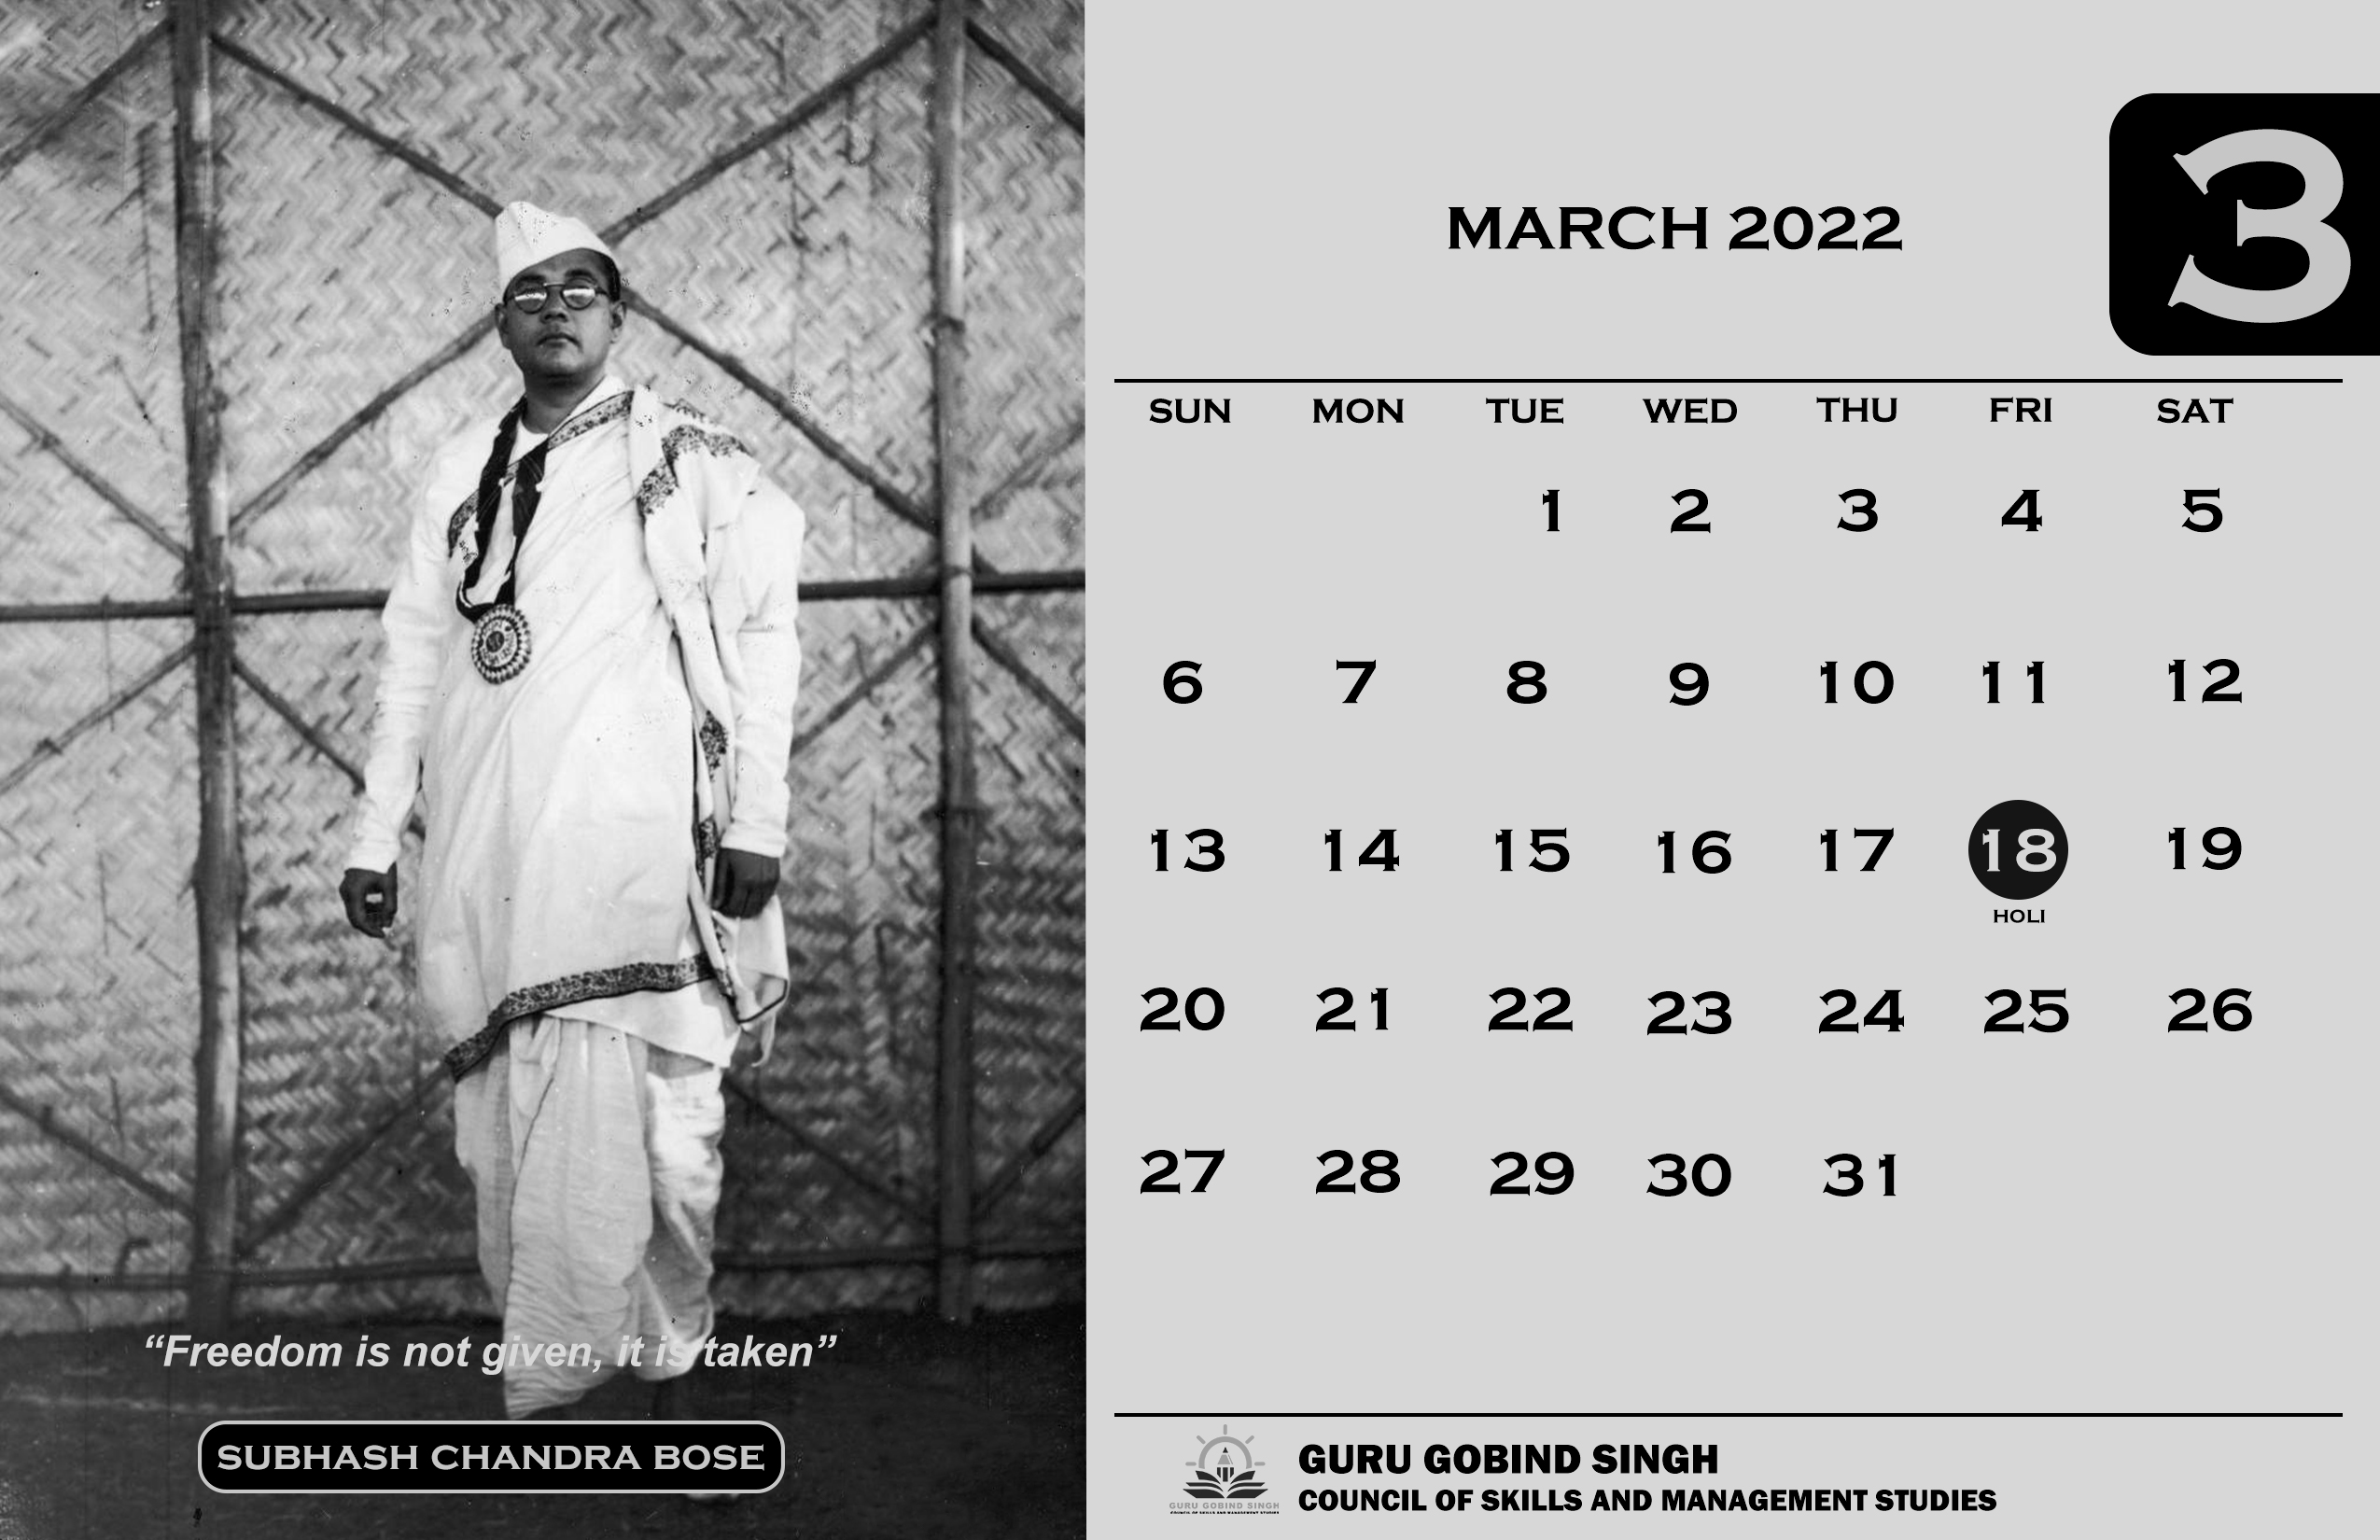 GGSCSMS calendar march